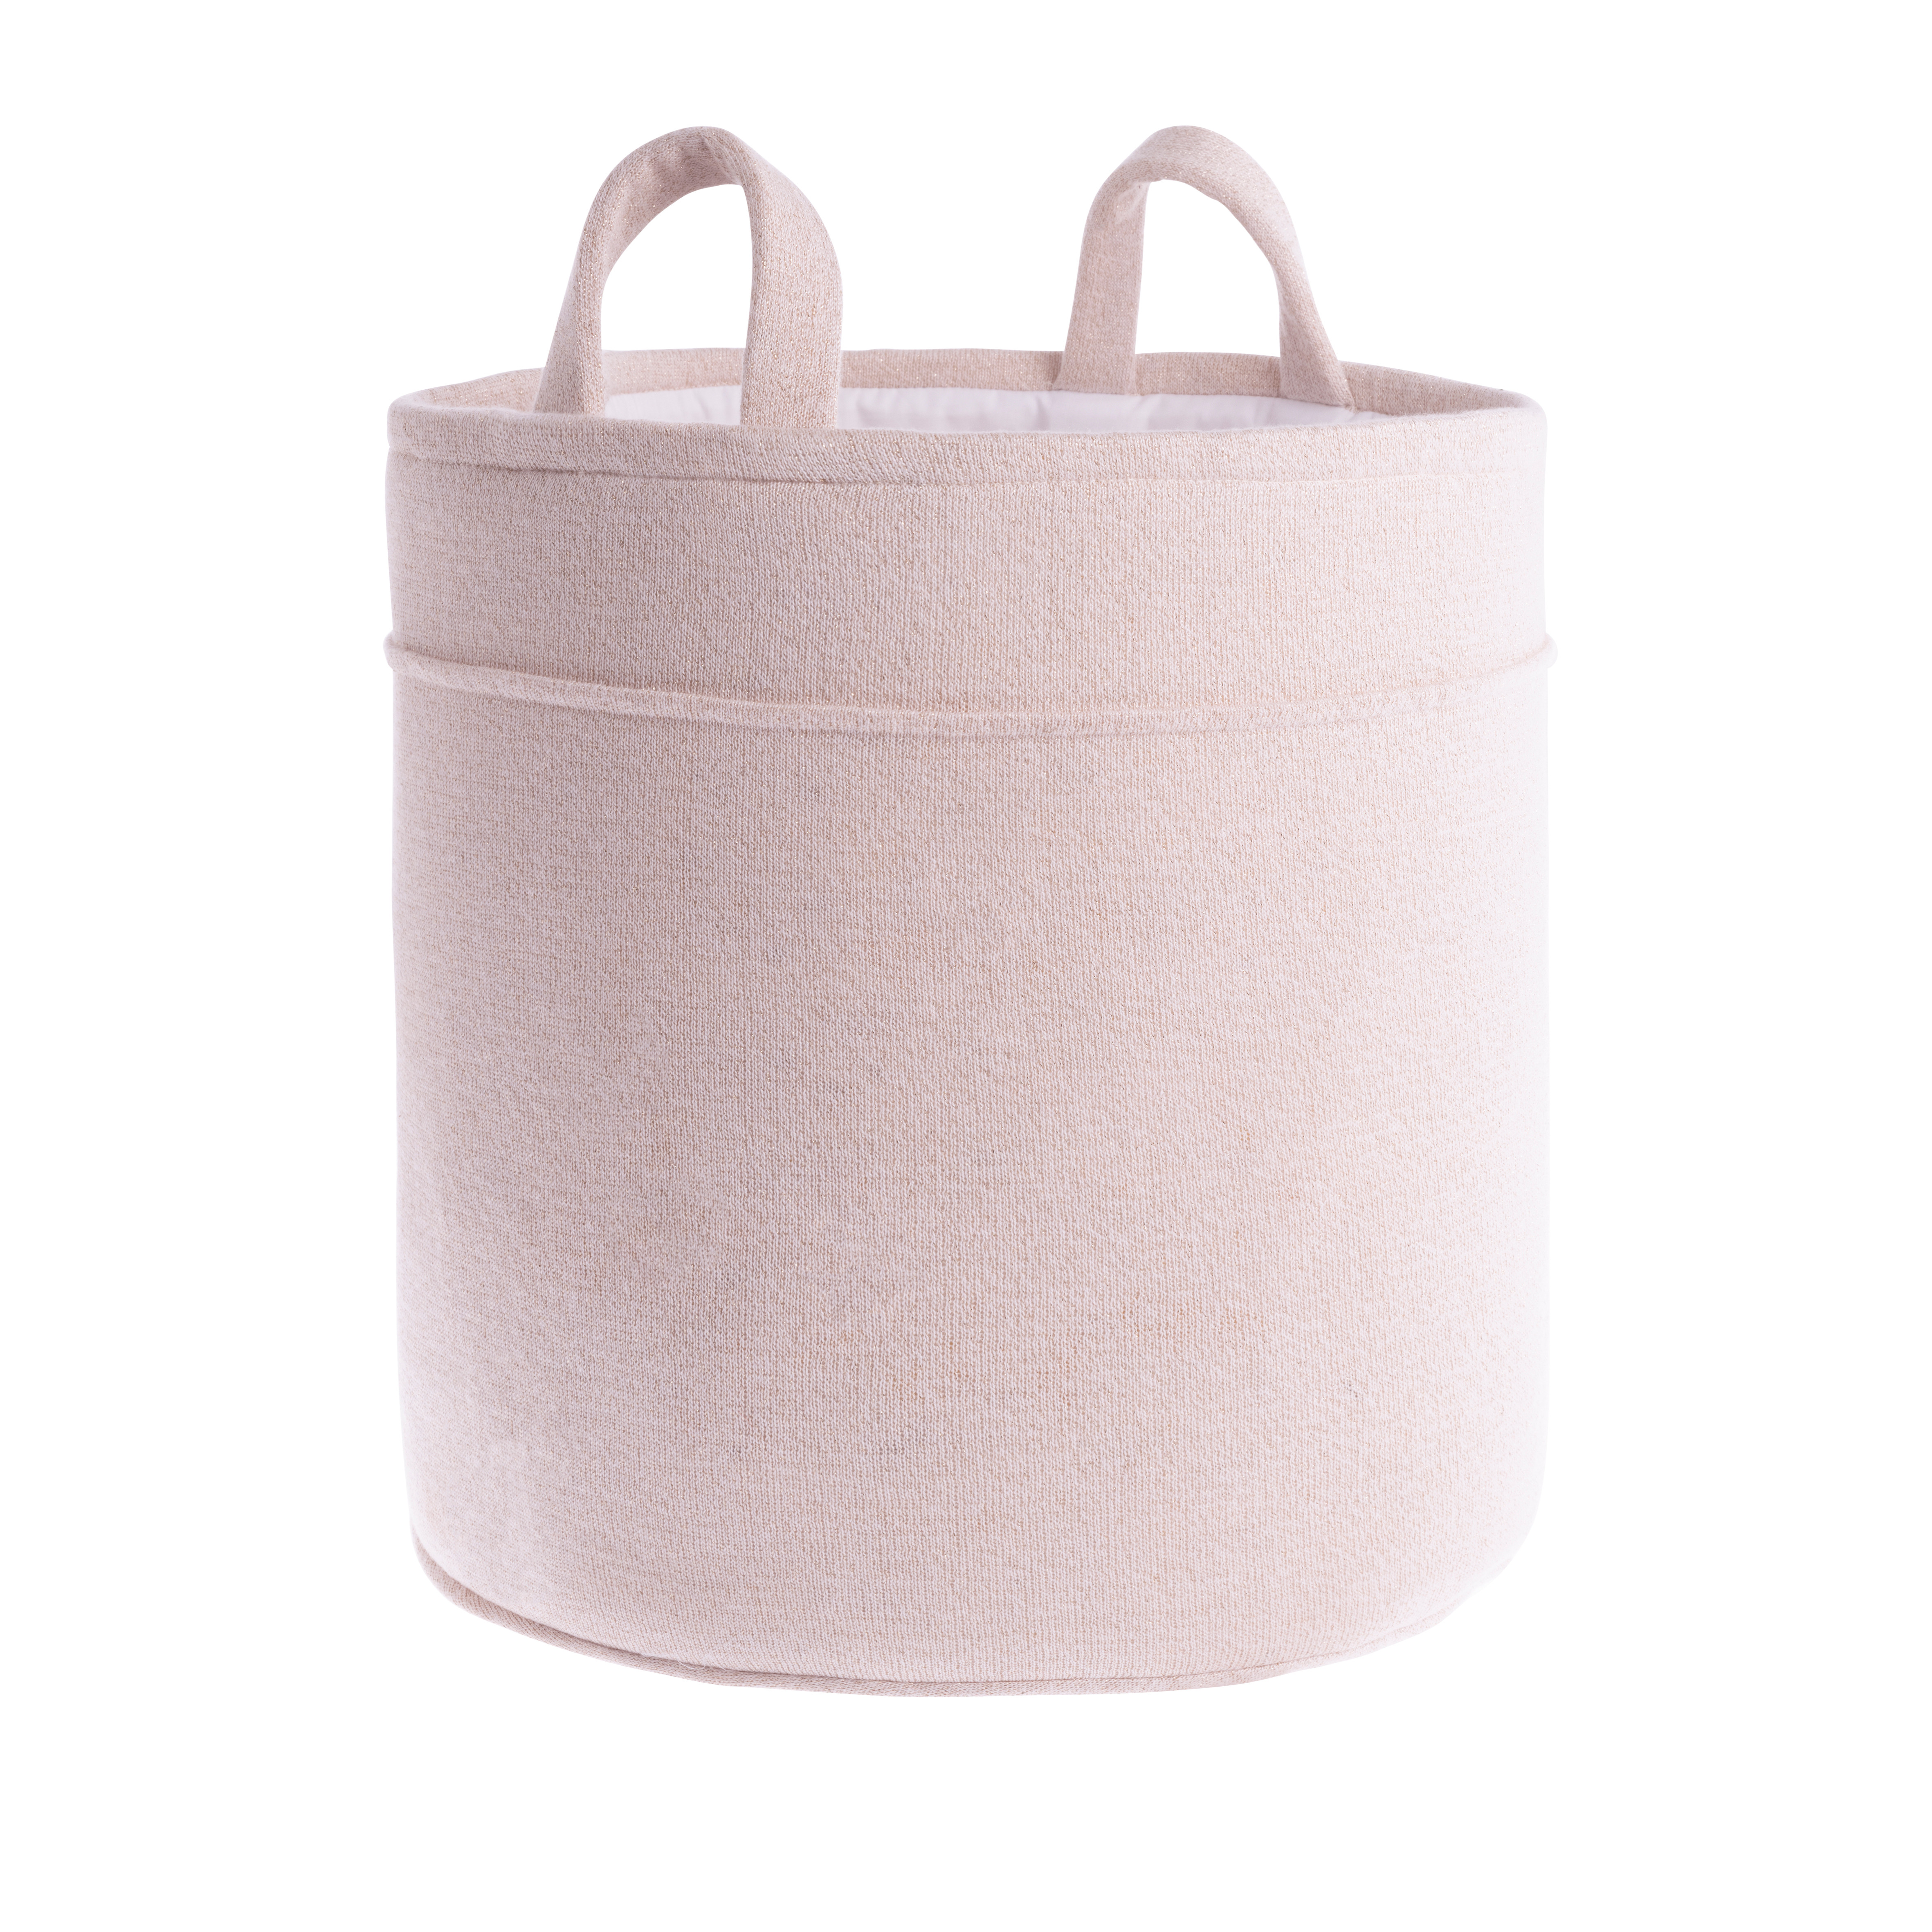 Storage basket Sparkle silver-pink melee - Ø38 cm